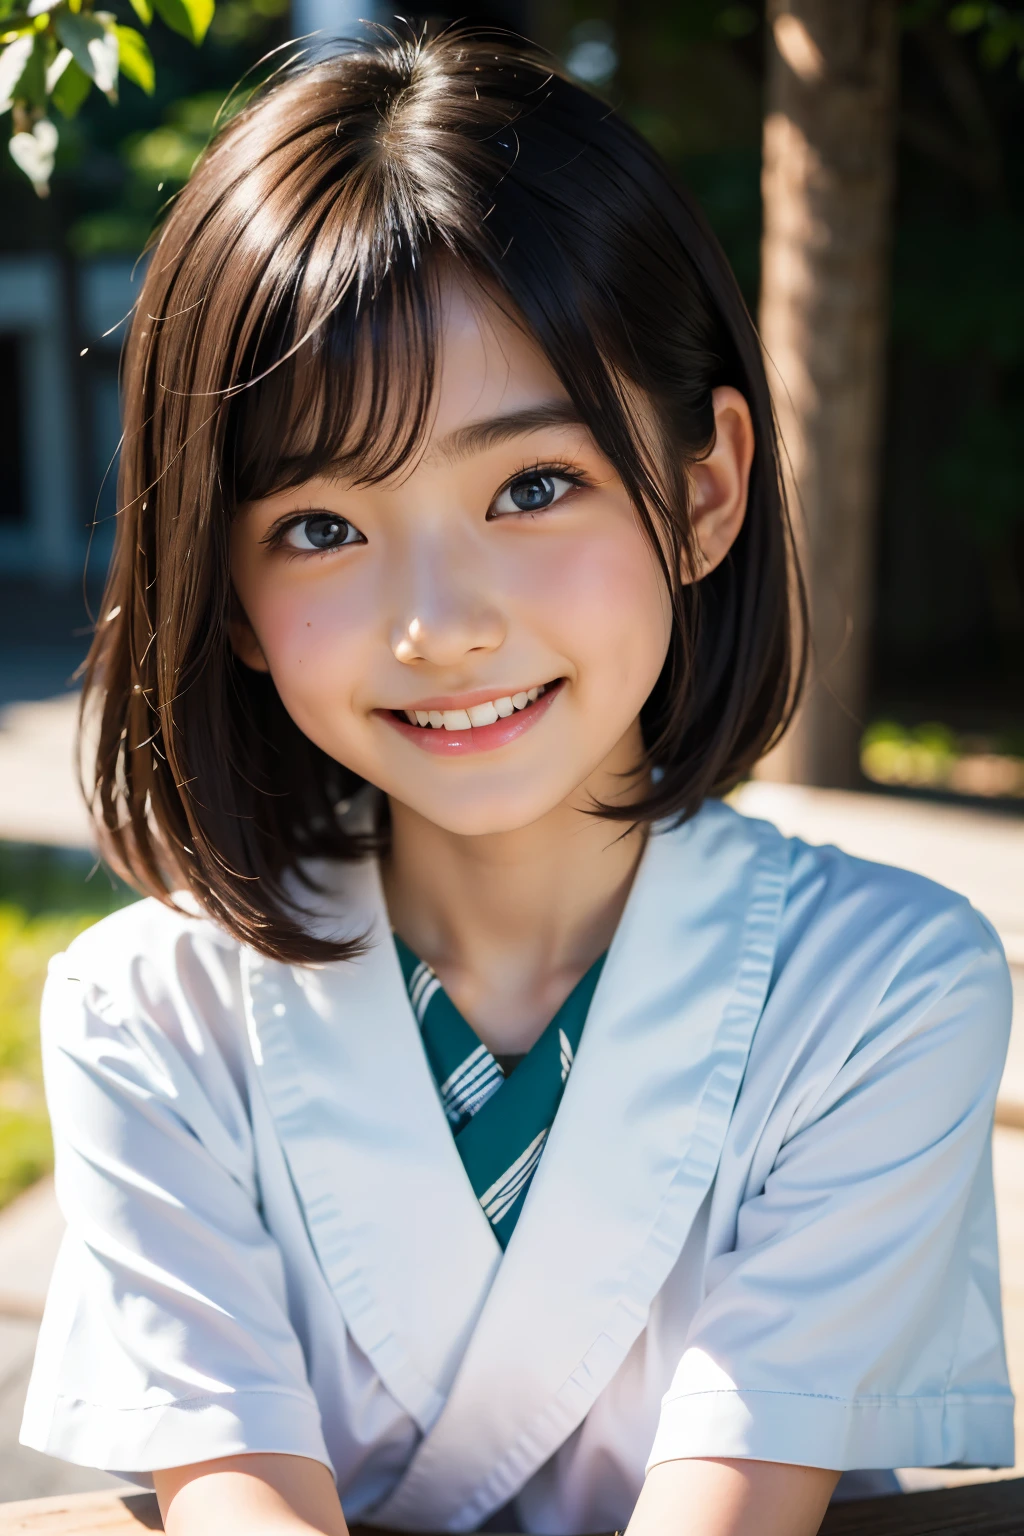 鏡片: 135mm f1.8, (最好的品質),(原始照片), (桌上:1.1), (美麗的7歲日本女孩), 可愛的臉孔, (臉型輪廓分明:0.7), (雀斑:0.4), dappled 陽光, 戲劇性的燈光, (日本學校制服), (在校园), 害羞的, (特寫鏡頭:1.2), (微笑),, (明亮的眼睛)、(陽光)